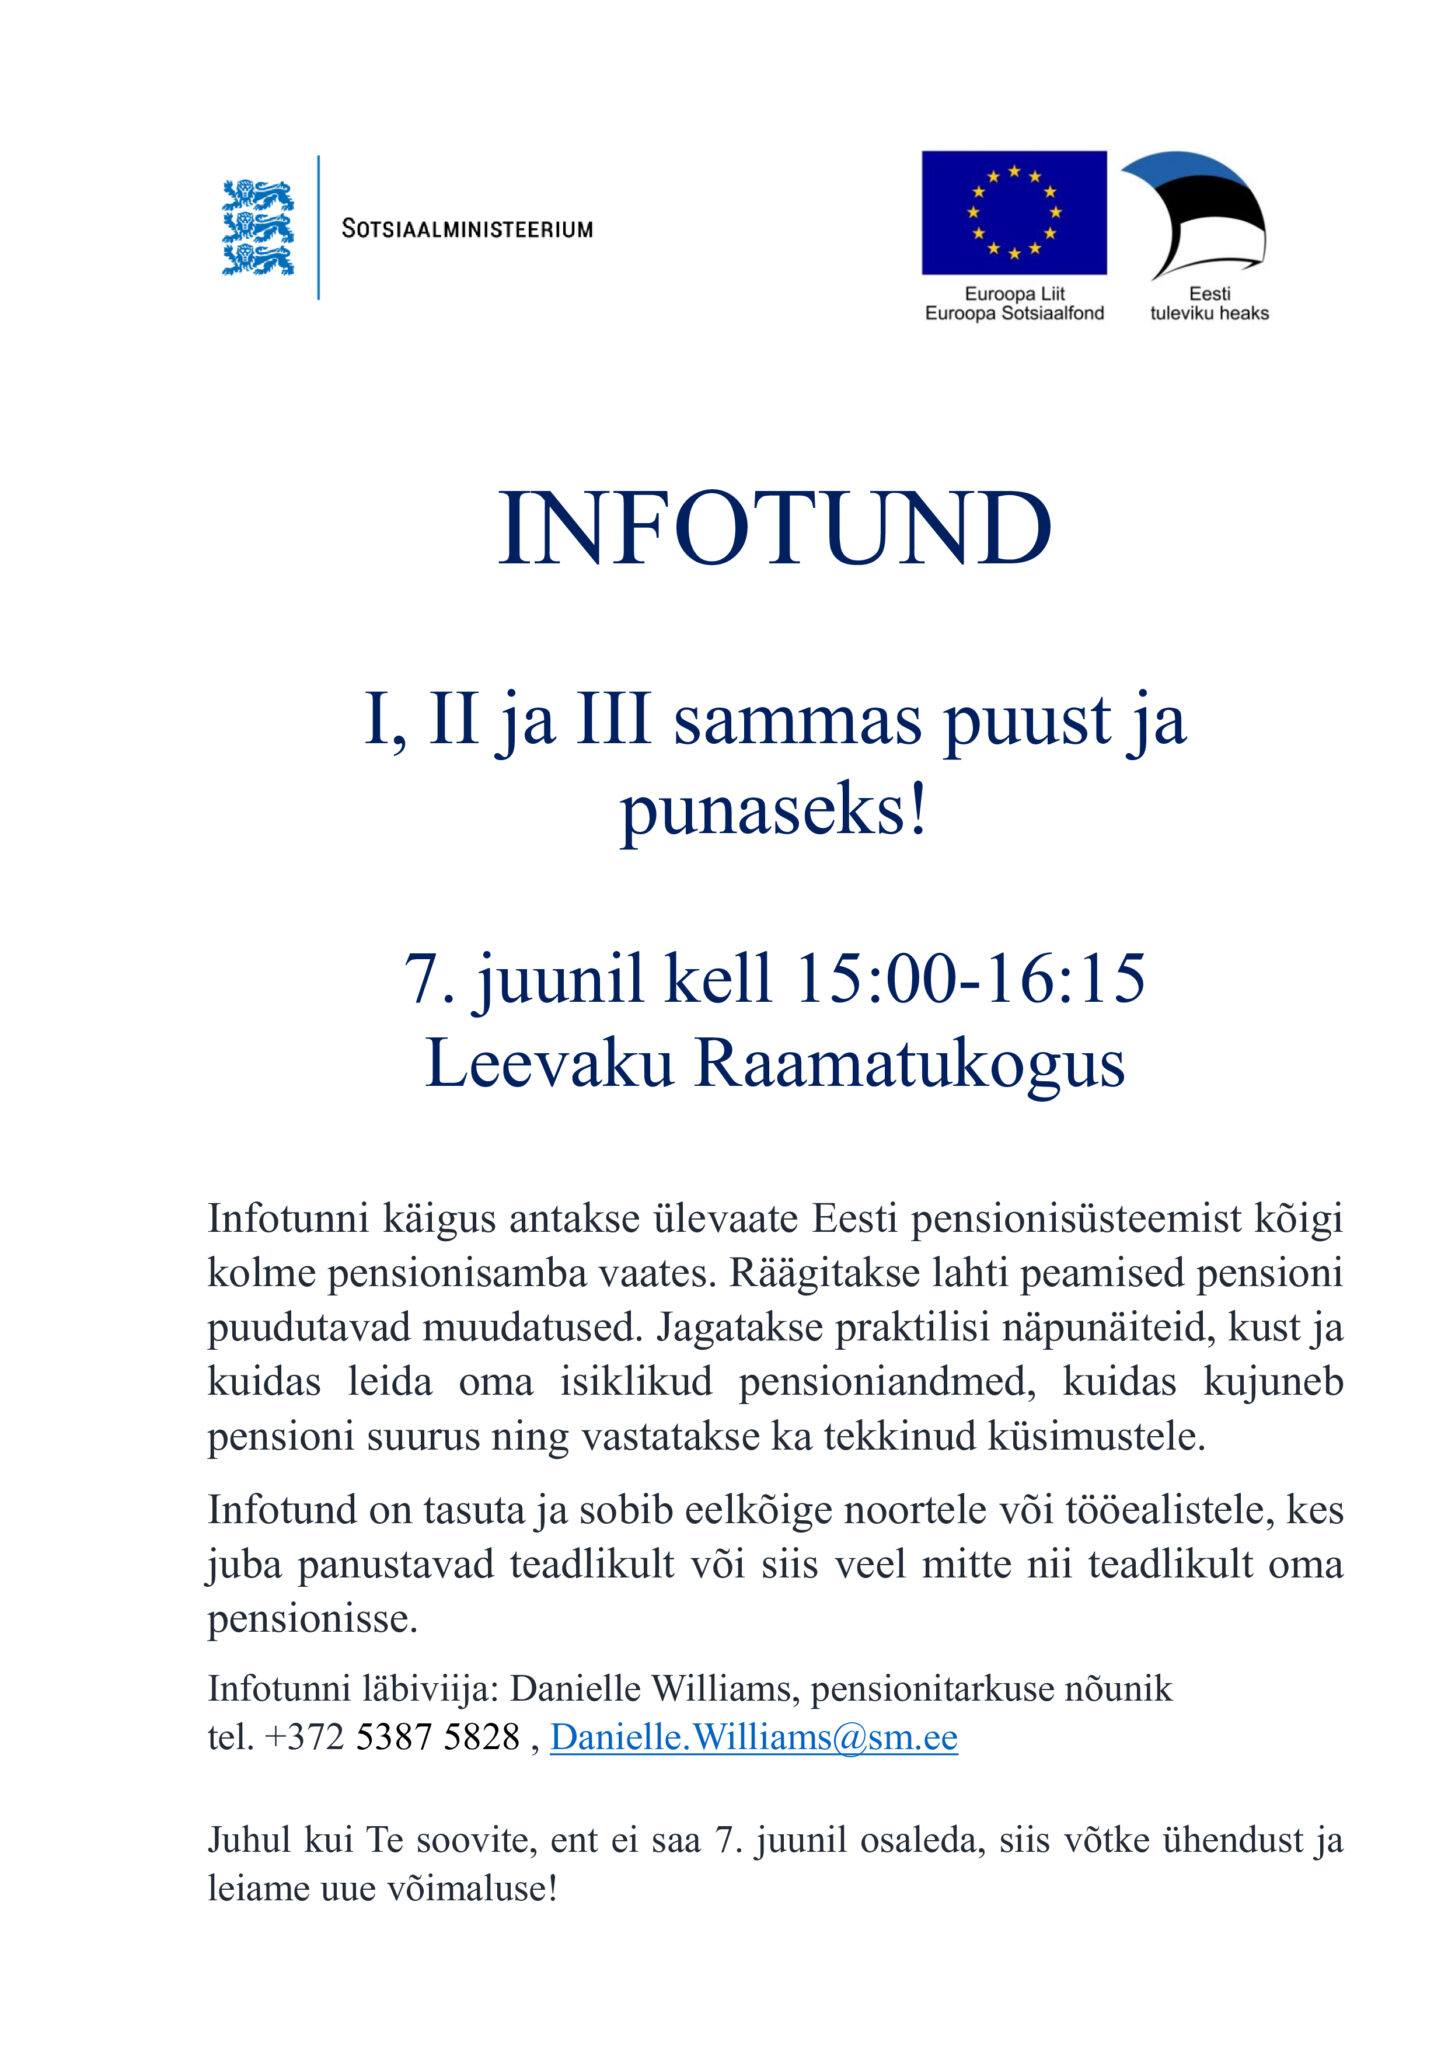 "I, II ja III sammaspuust ja punaseks!" - pensioniteemaline infotund. @ Leevaku raamatukogu | Leevaku | Põlva maakond | Eesti